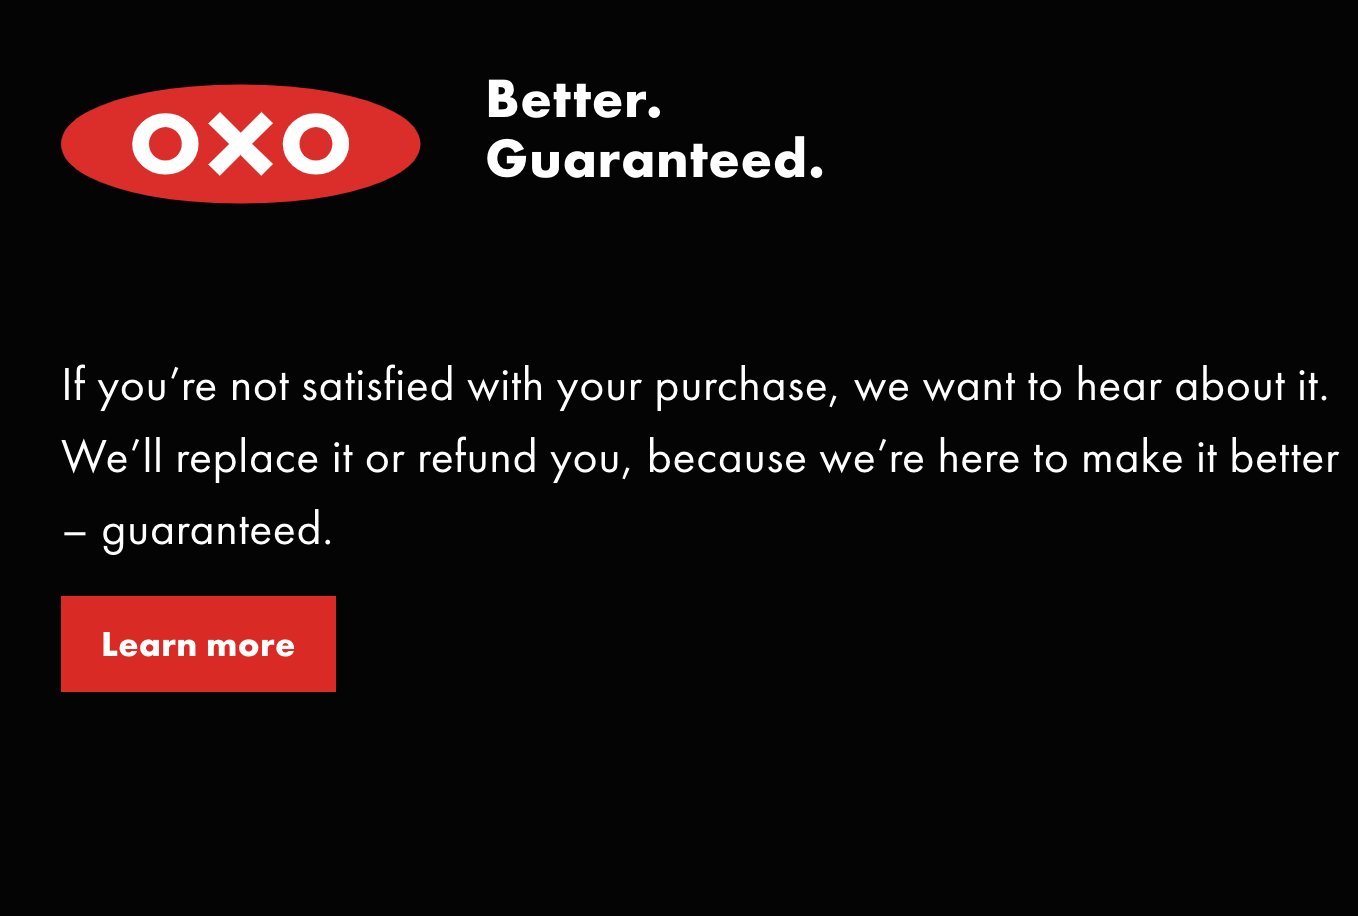 customer satisfaction guarantee example: OXO